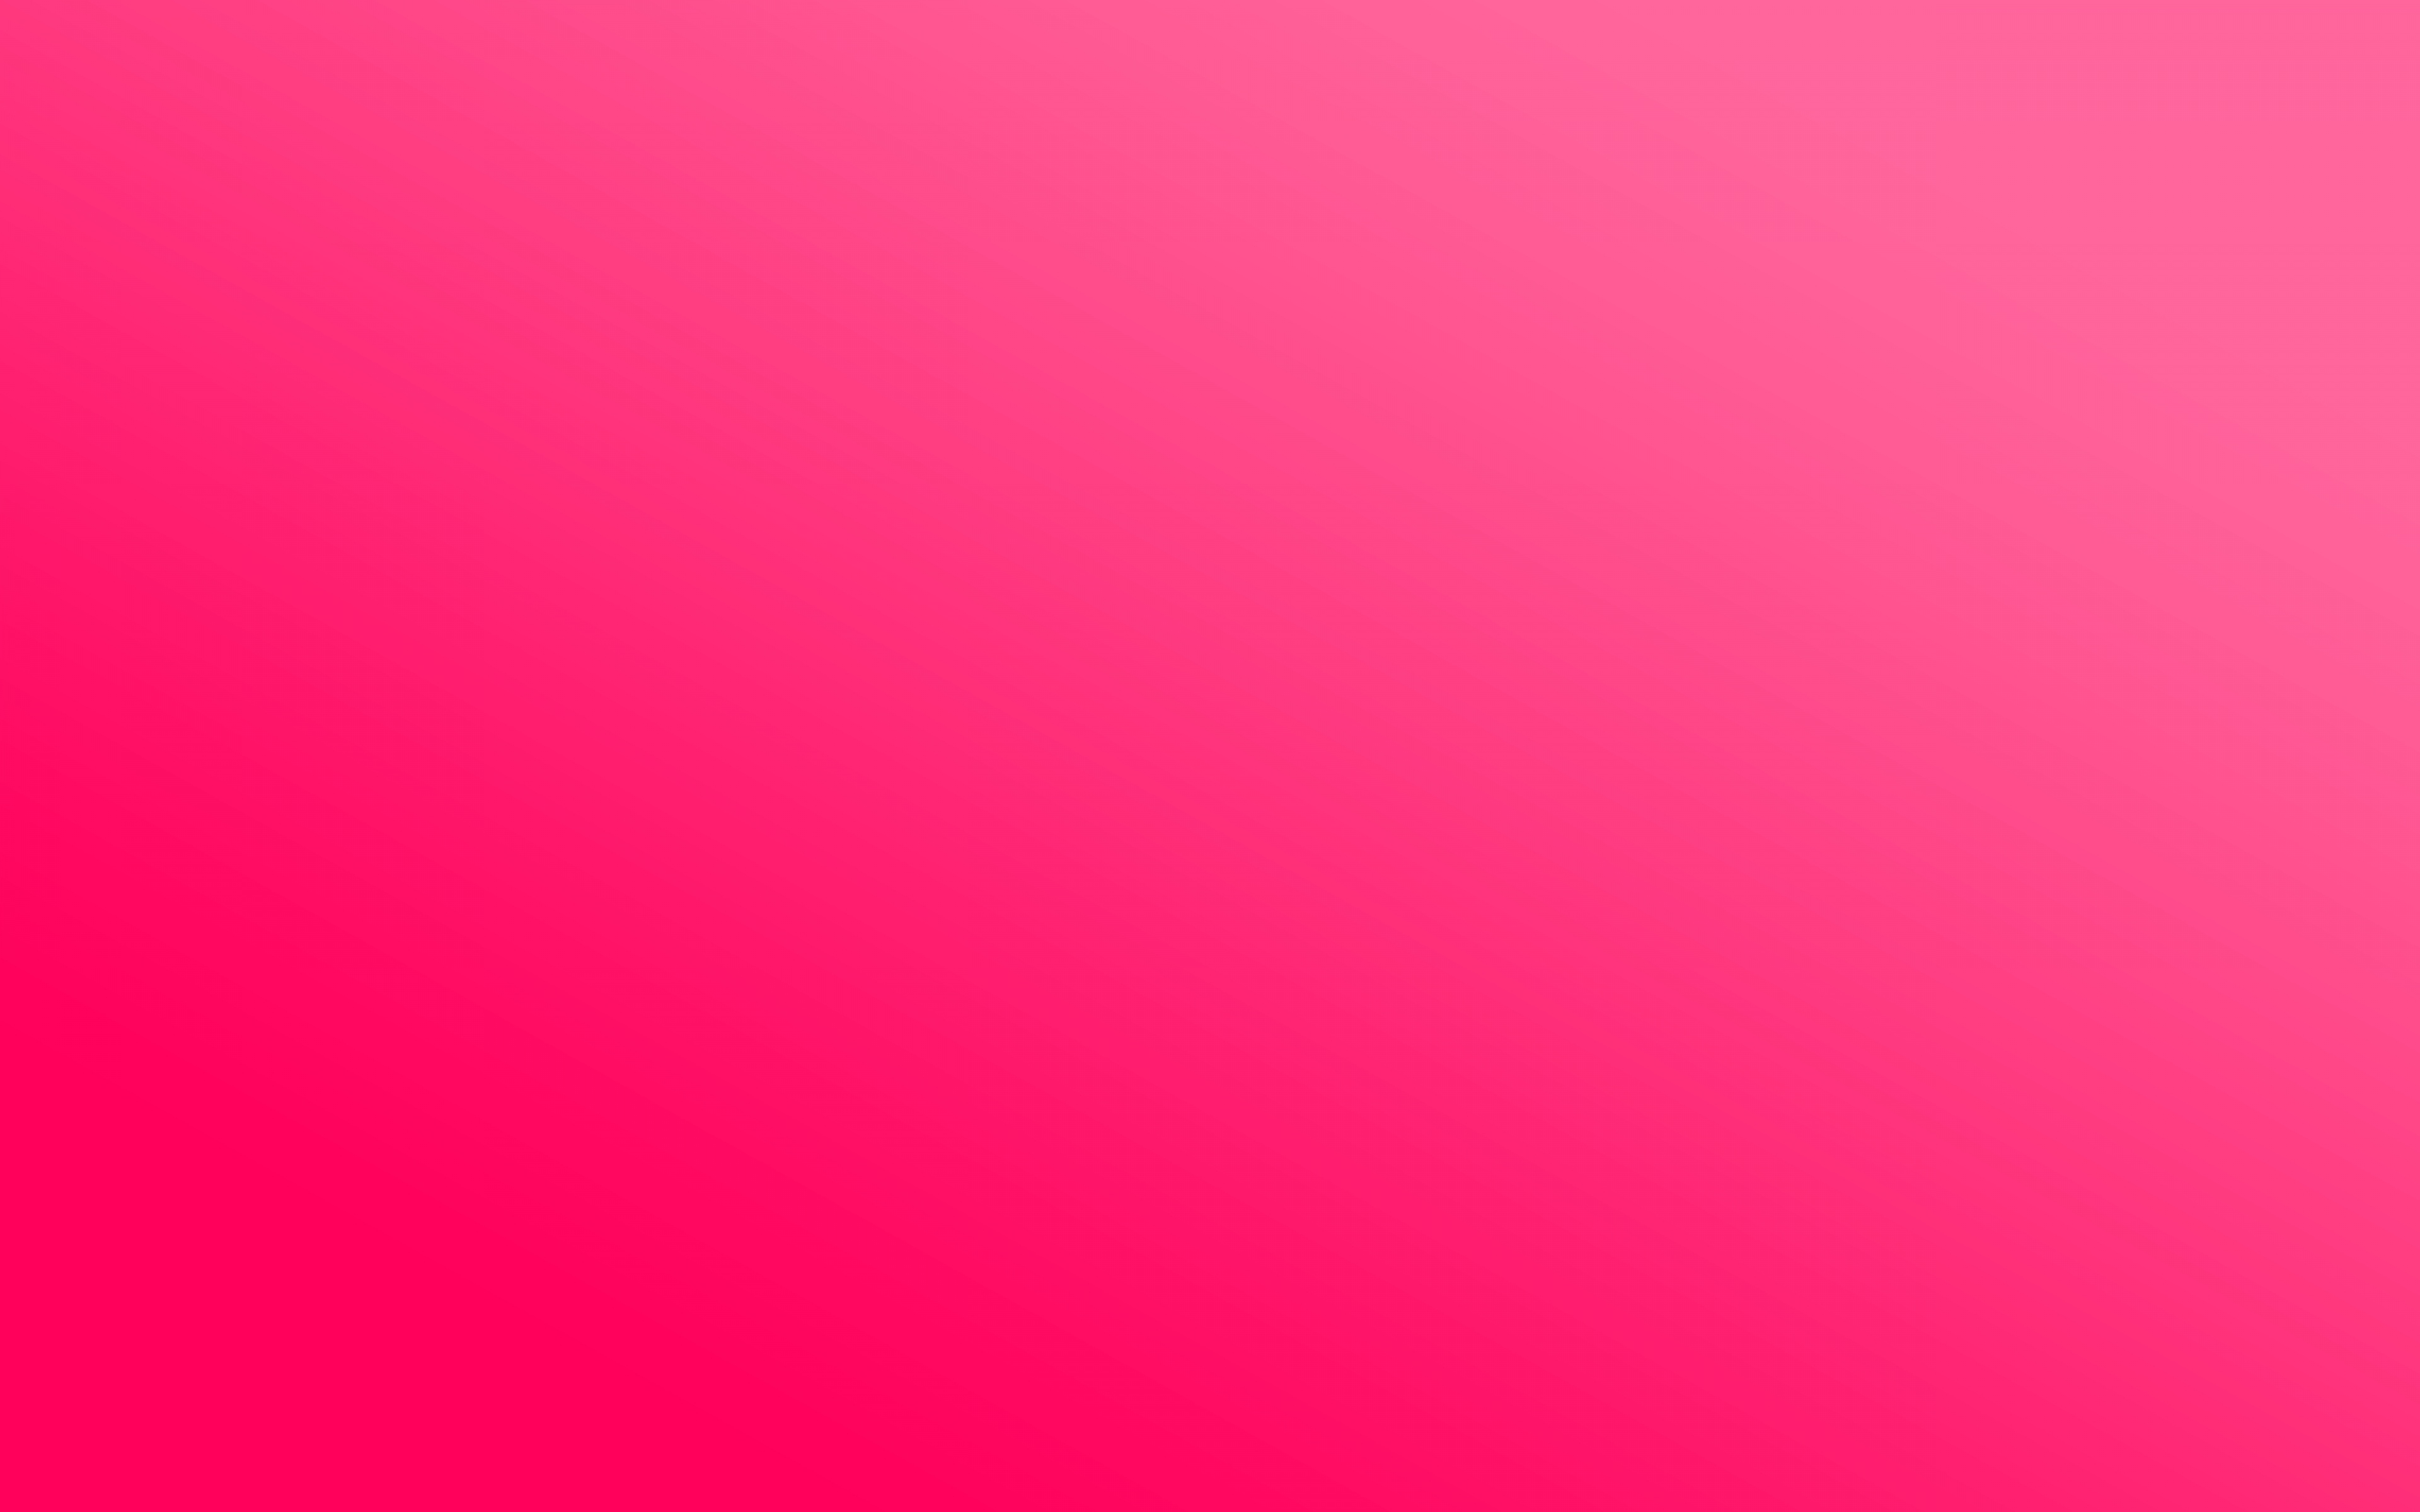 Với bức hình 75+] Bright Pink Background - WallpaperSafari, màu hồng rực rỡ sẽ làm bạn tràn đầy sức sống và năng lượng để bắt đầu một ngày mới đầy tích cực. Với nhiều kiểu thiết kế được cập nhật thường xuyên, bạn sẽ chắc chắn tìm được một bức hình nền Pink đẹp và phù hợp với cá tính của mình.